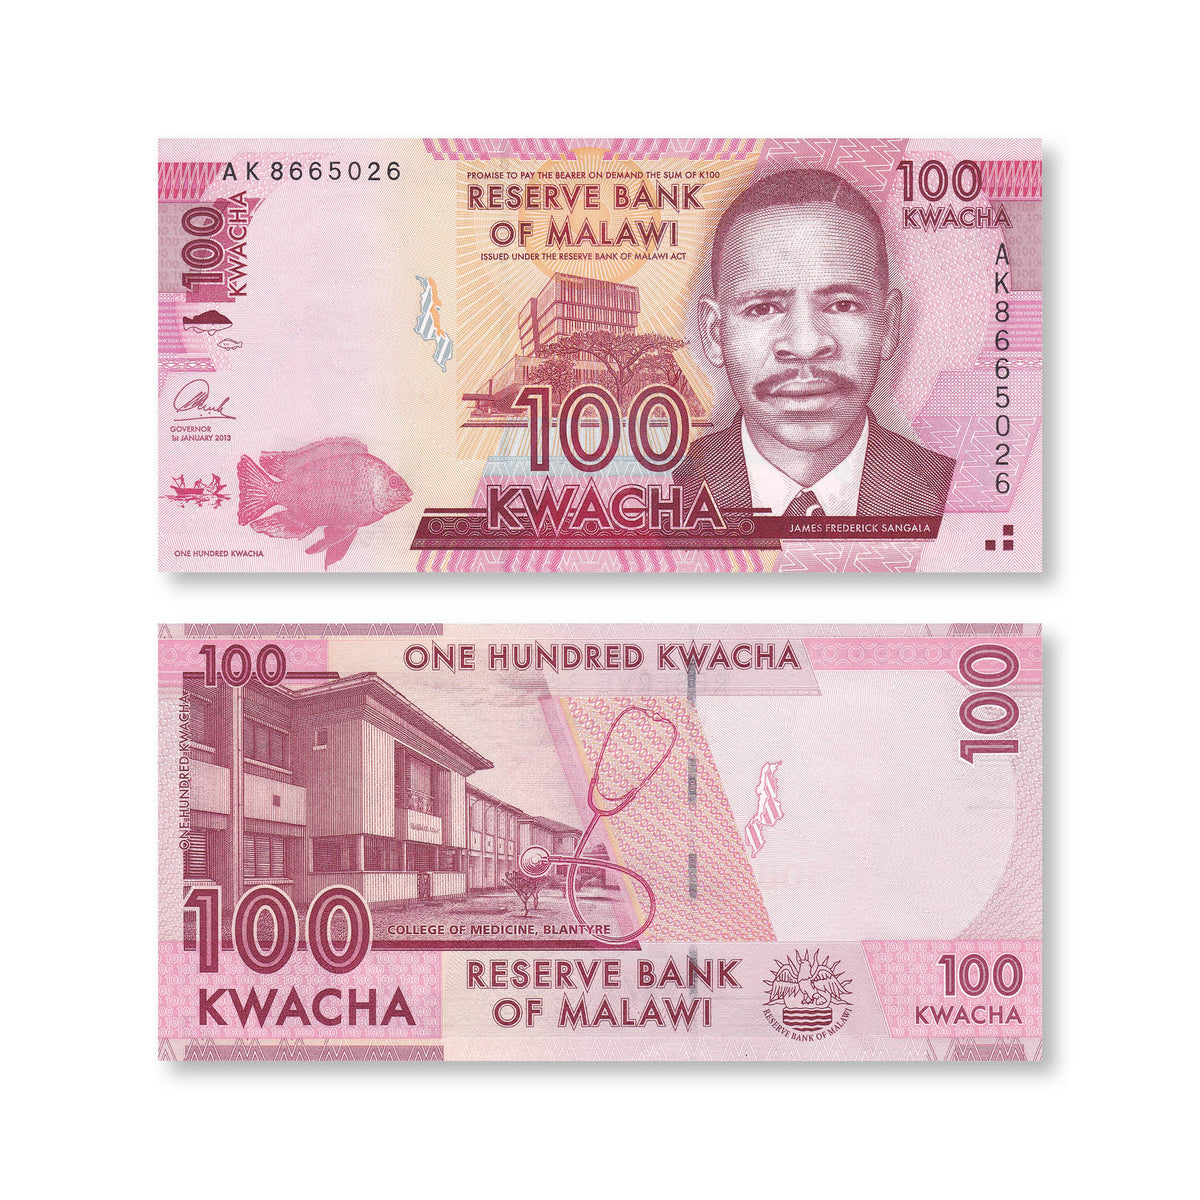 Malawi 100 Kwacha, 2013, B152b, P59b, UNC - Robert's World Money - World Banknotes